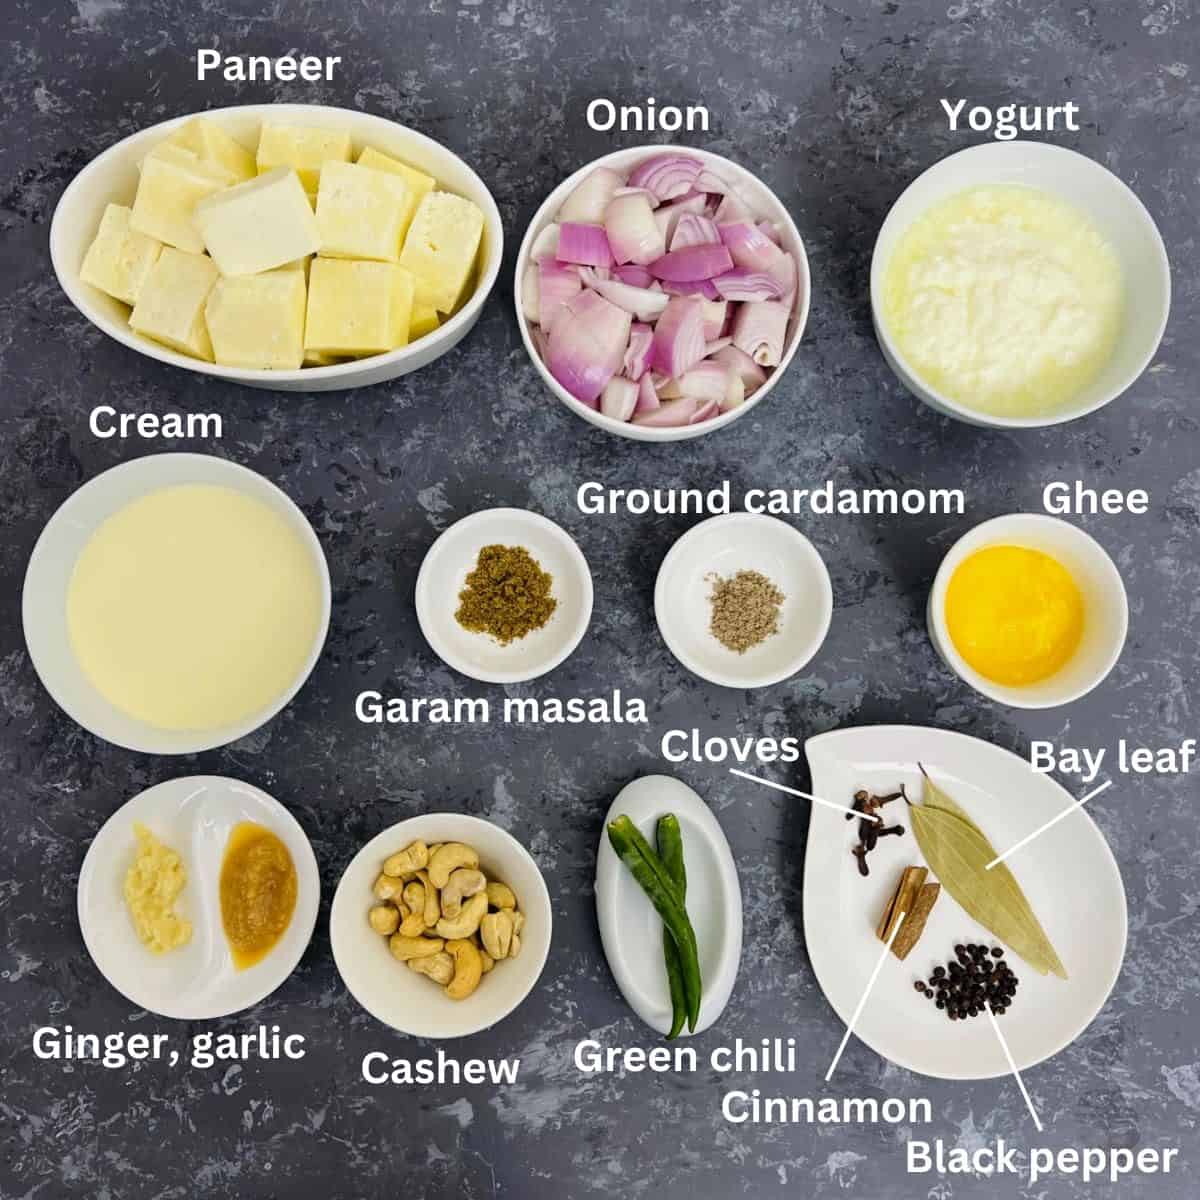 shahi paneer ingredients with labels.